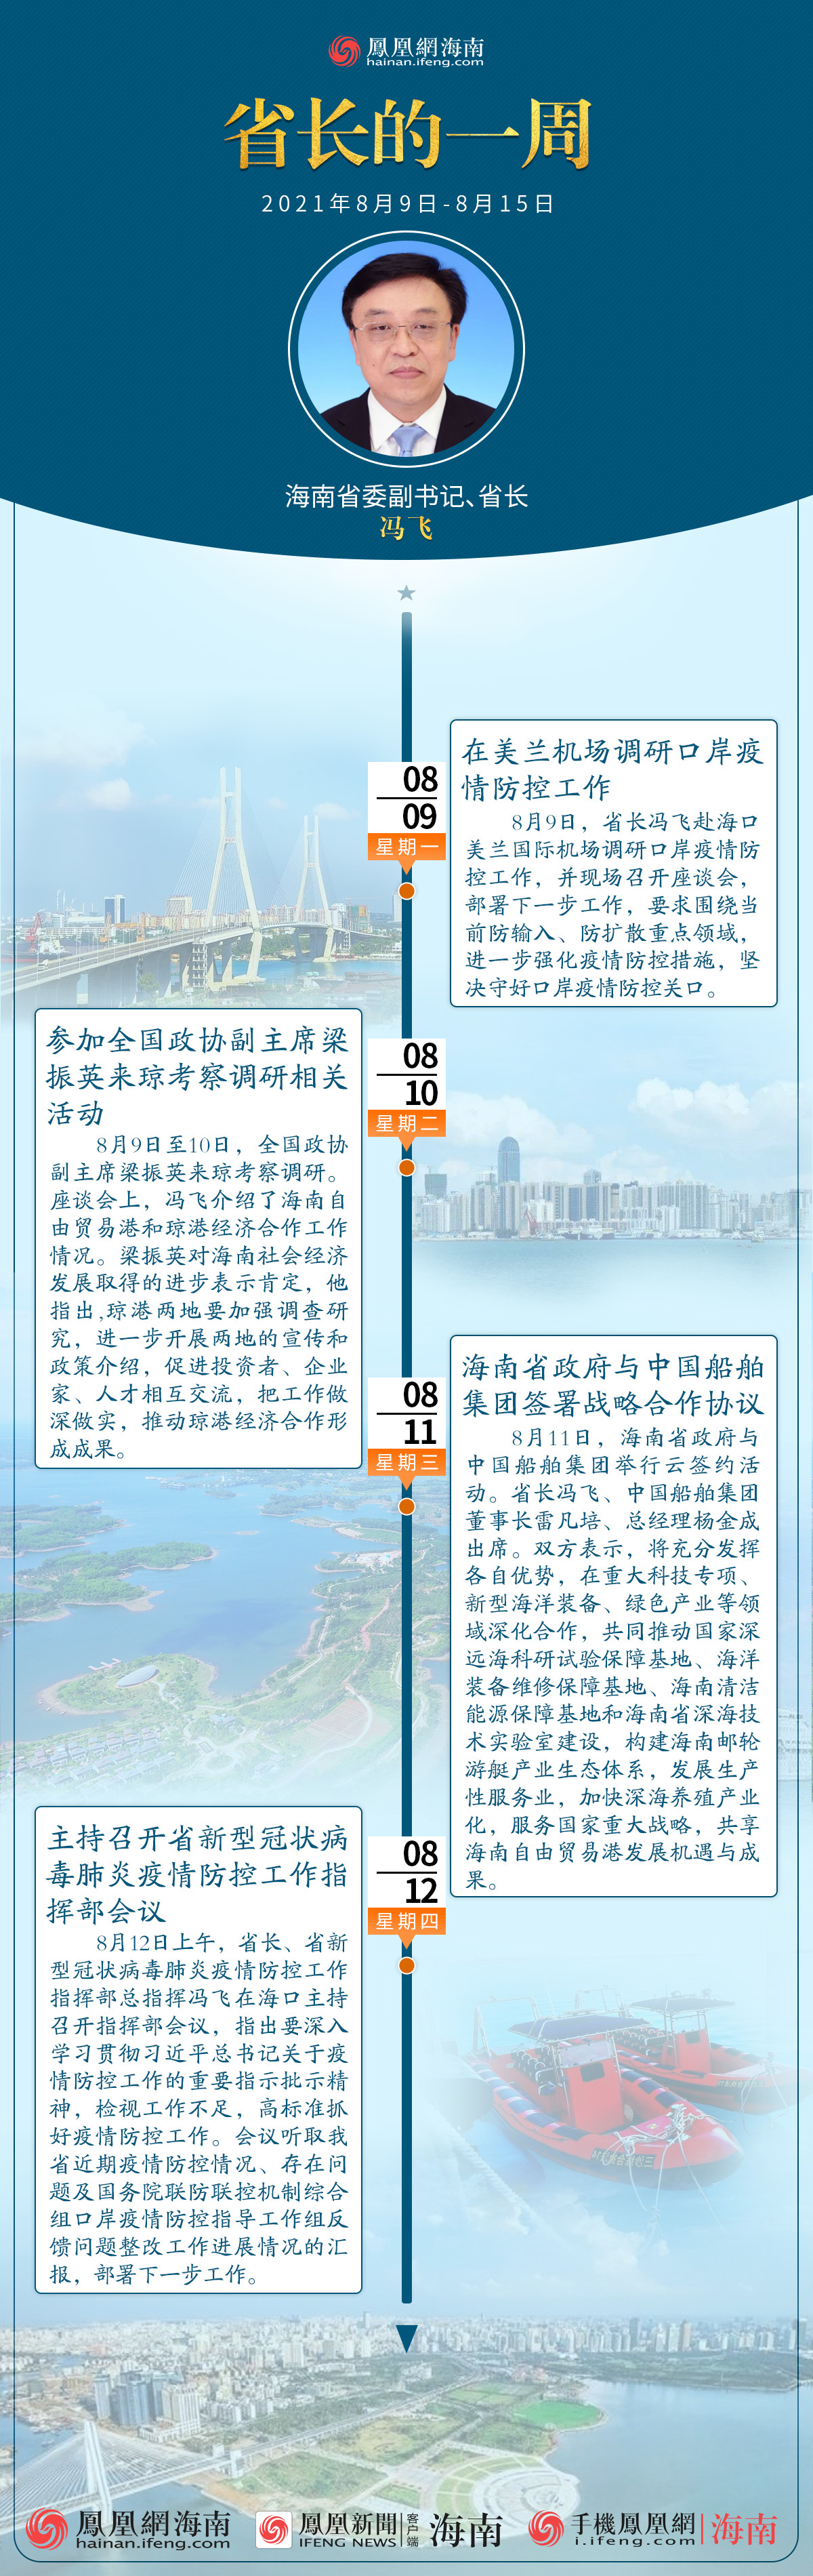 图解：三分钟速读丨海南省省长冯飞的一周（2021年8月9日至8月15日）